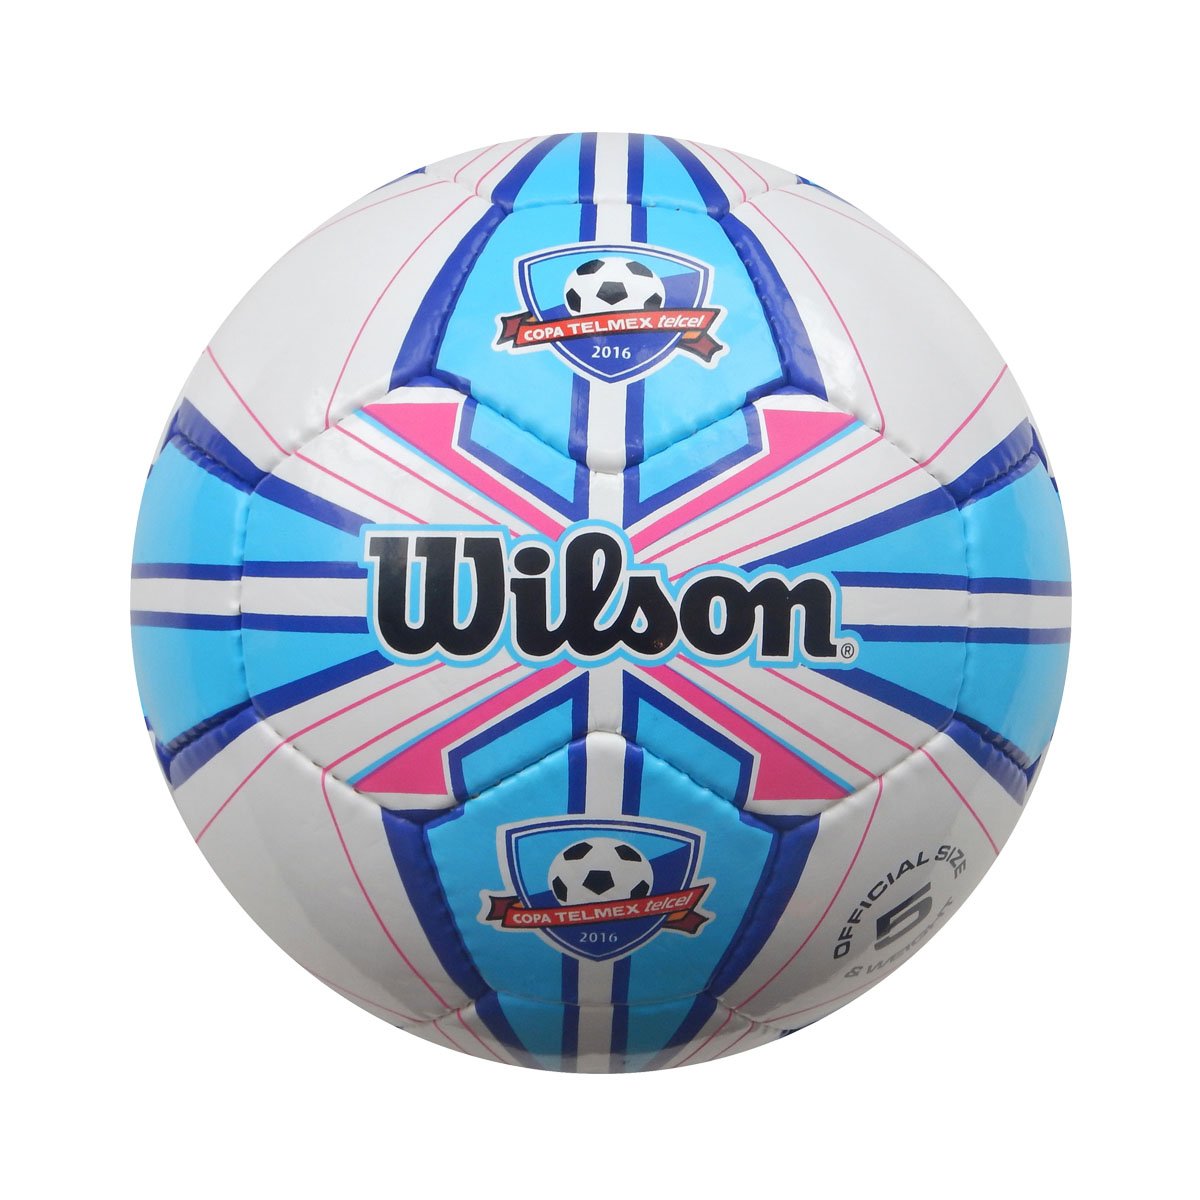 Balon de Soccer Copa Telmex Wilson